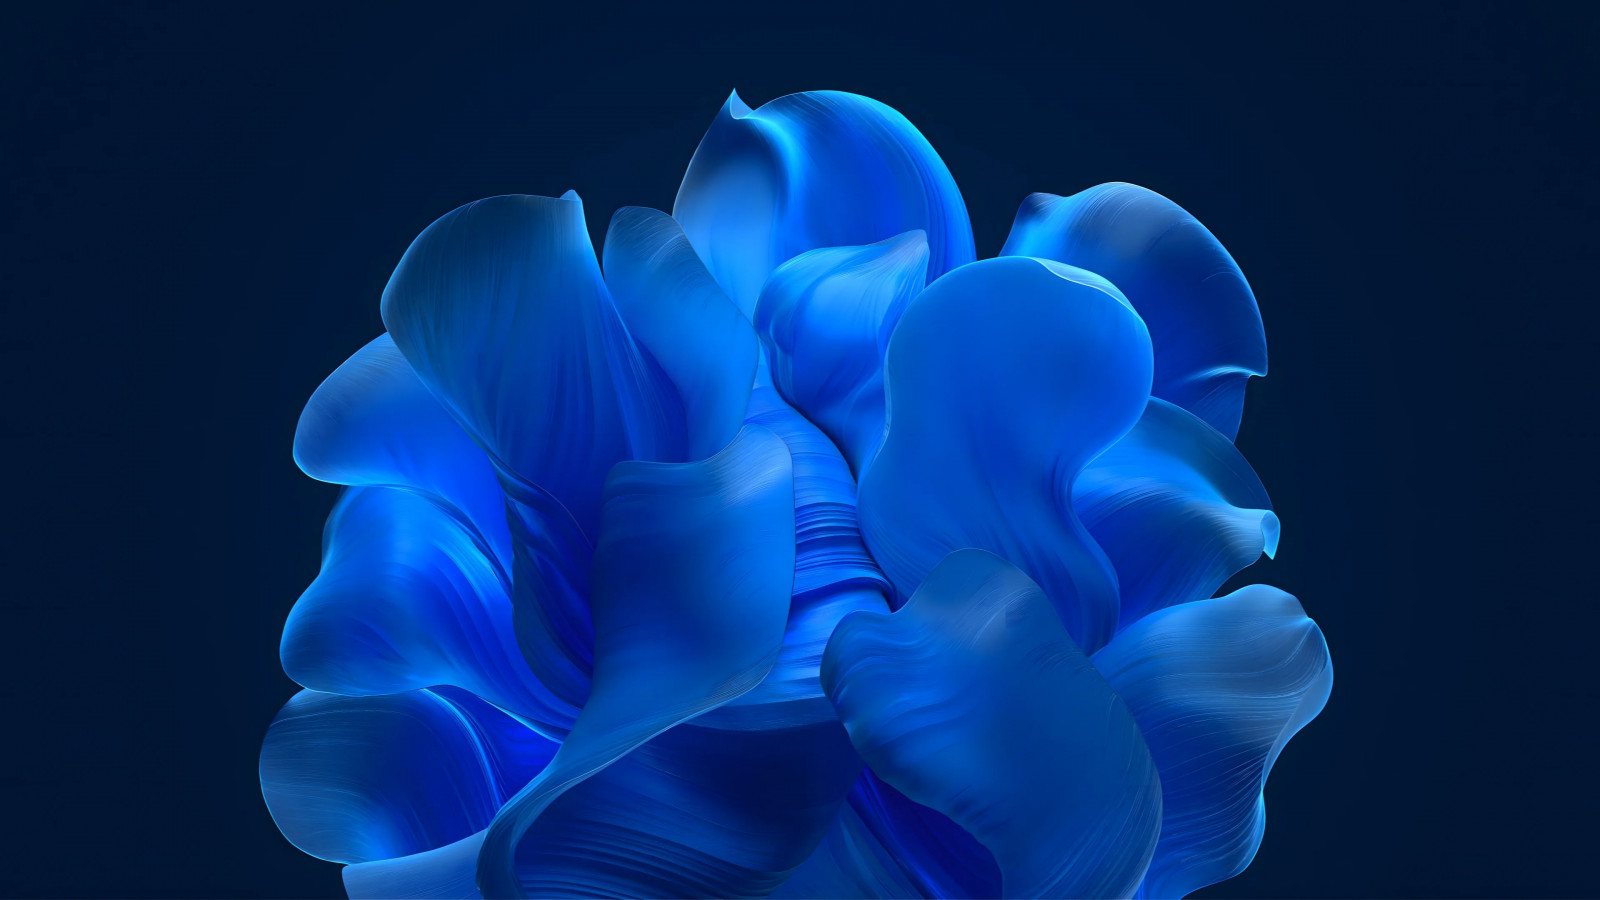 The blue petals wallpaper 1600x900